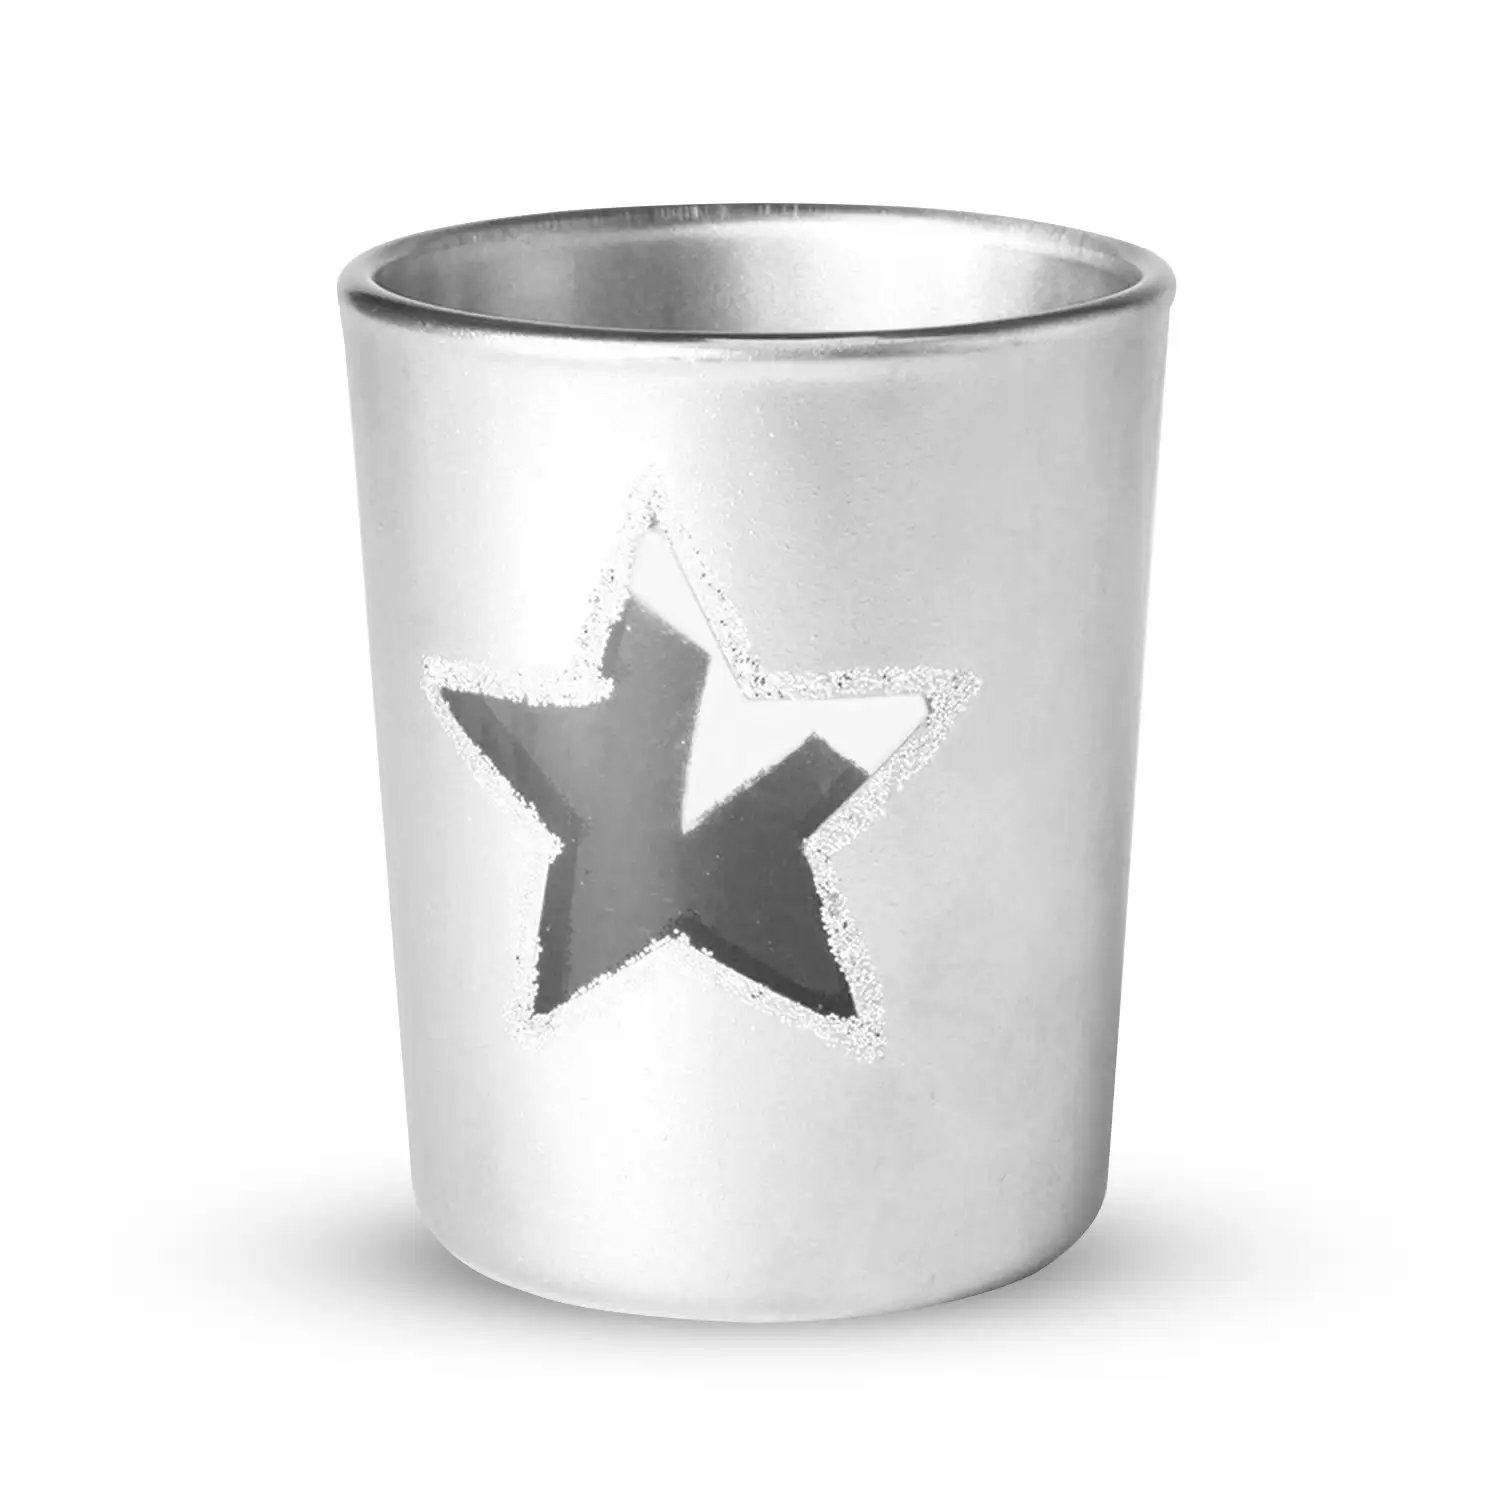 Vela de navidad en con recipiente de cristal en diseño de estrella.